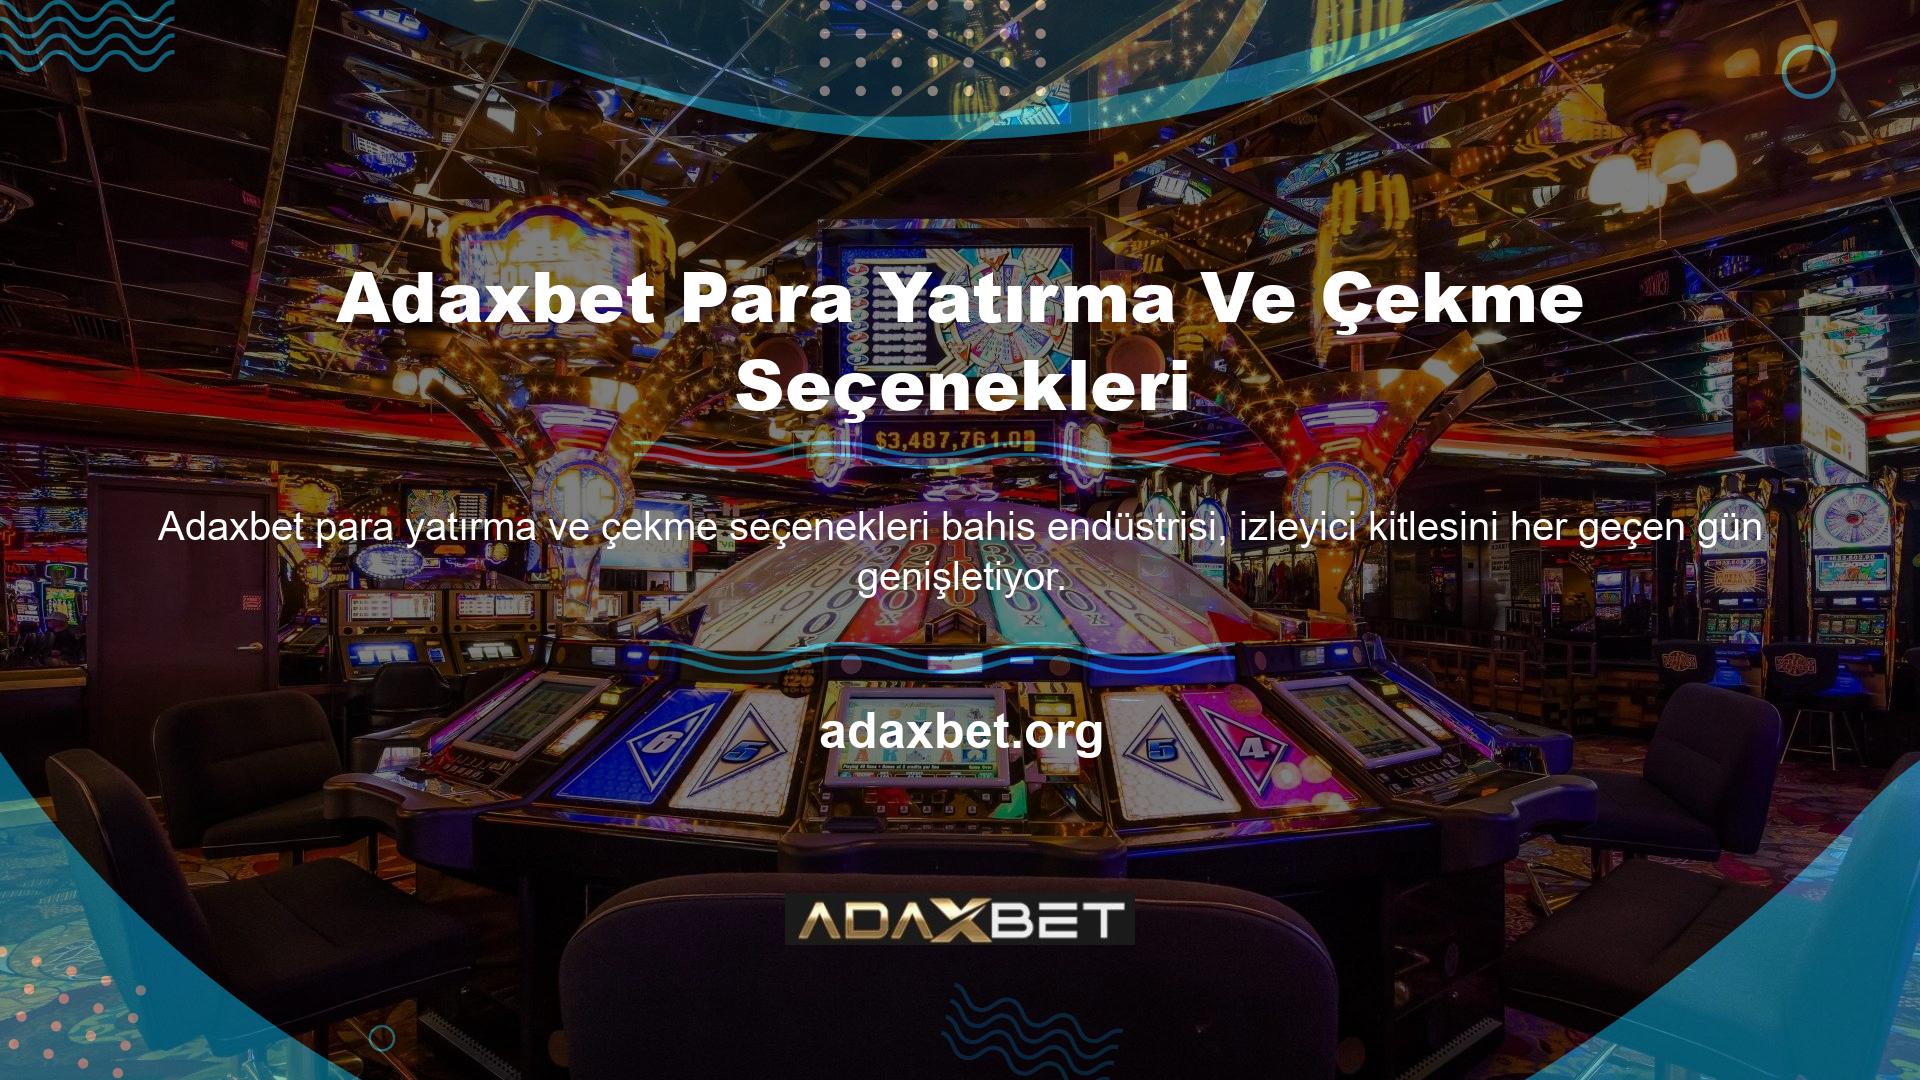 Bazı çevrimiçi casino sitelerinin bu alandaki rekabette kesinlikle önde olduğunu belirtmekte fayda var